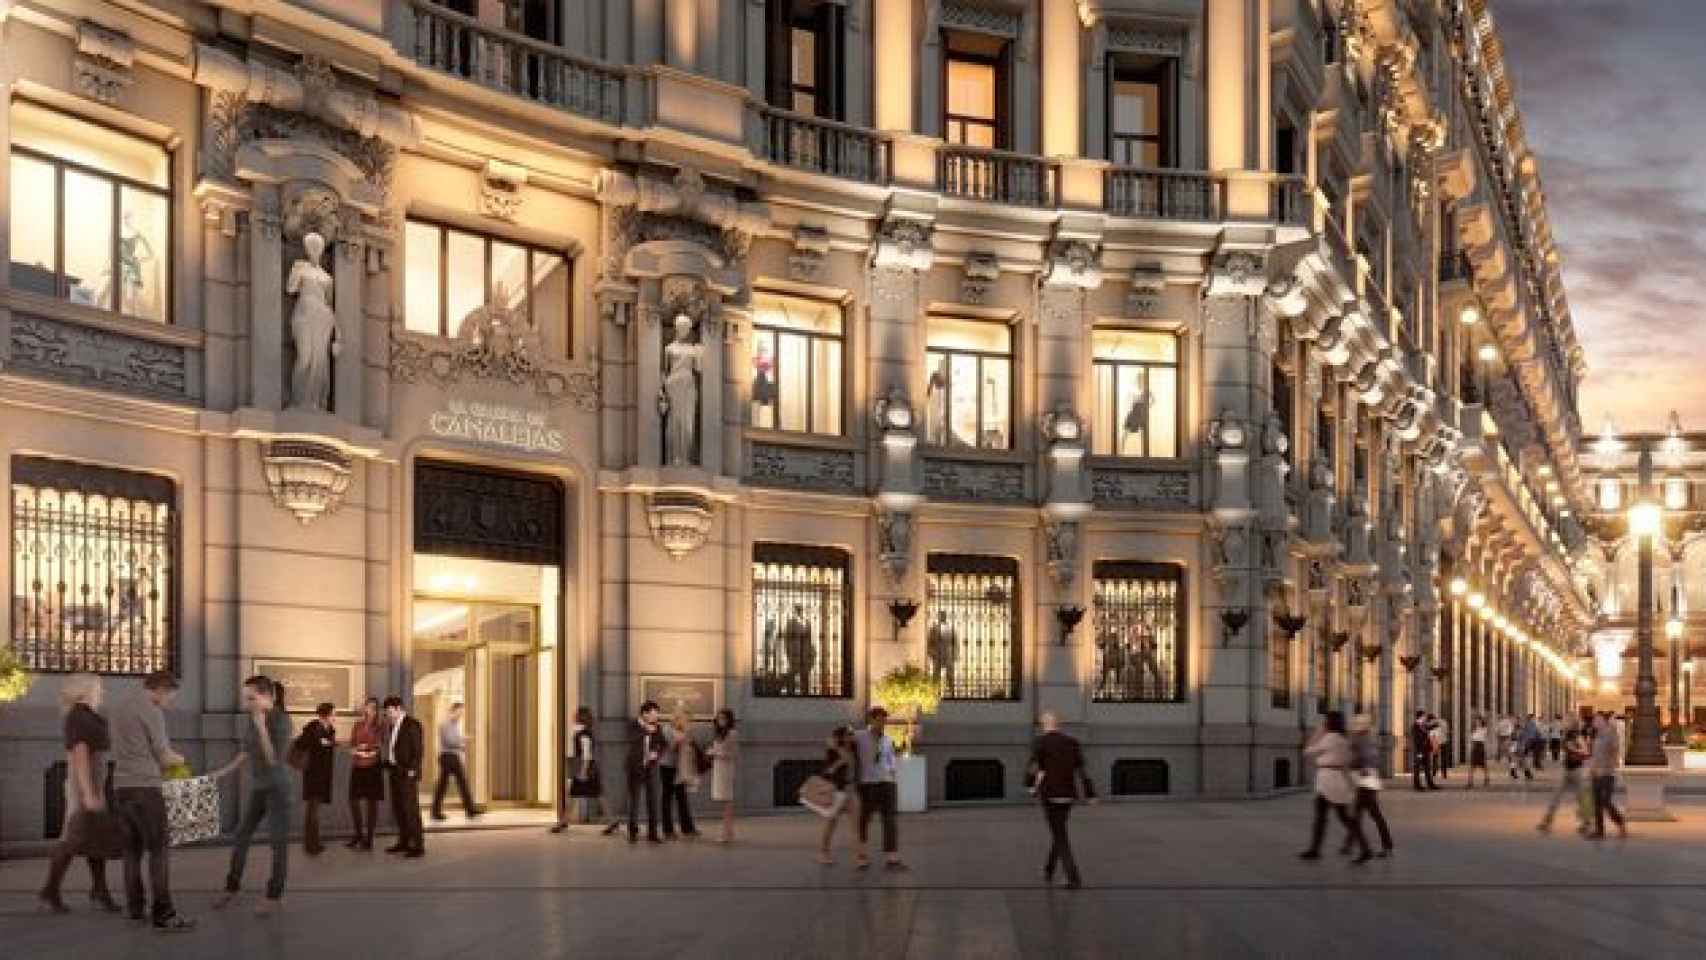 Proyección del Centro Canalejas Madrid (CCM), el nuevo hotel de lujo de Four Seasons que abrirá las puertas en Madrid en 2019 / CG